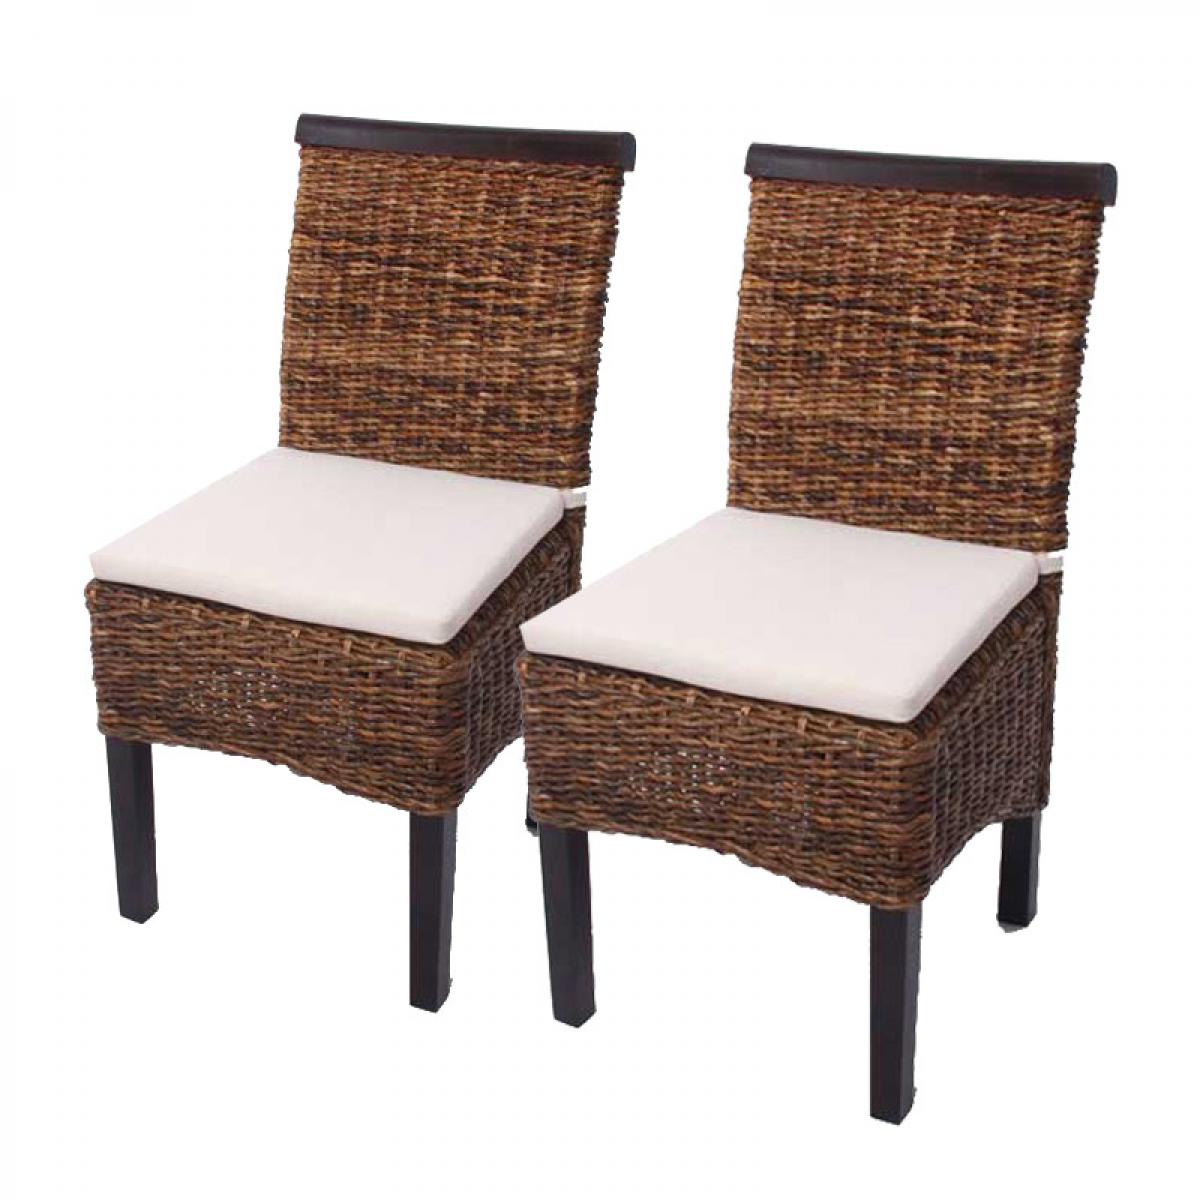 Mendler - Lot de 2 chaises M45, banane tressée, 47x54x93cn, pieds foncés, avec coussin - Chaises